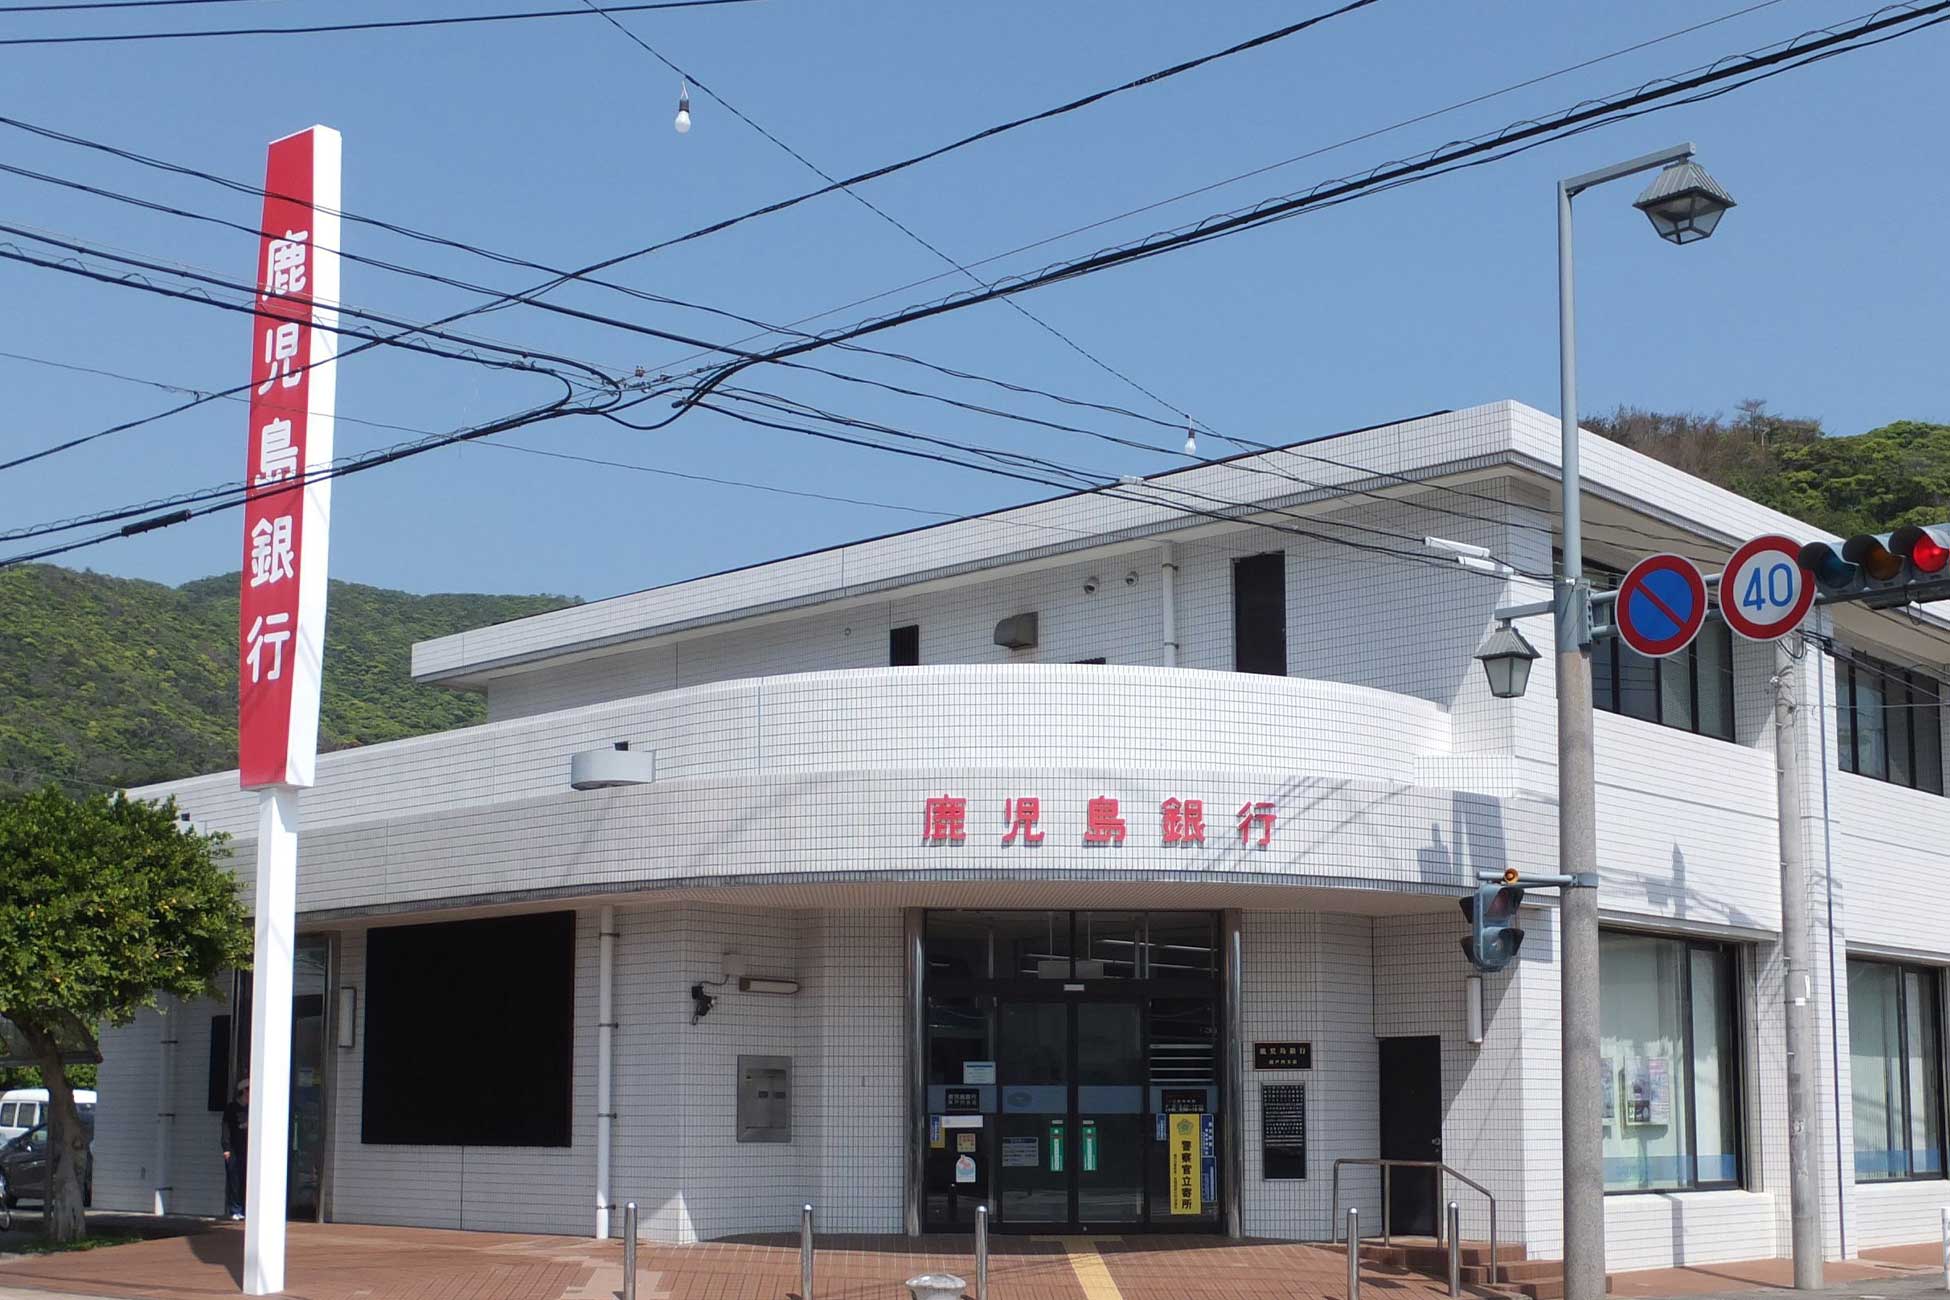 Open a bank account in Kagoshima